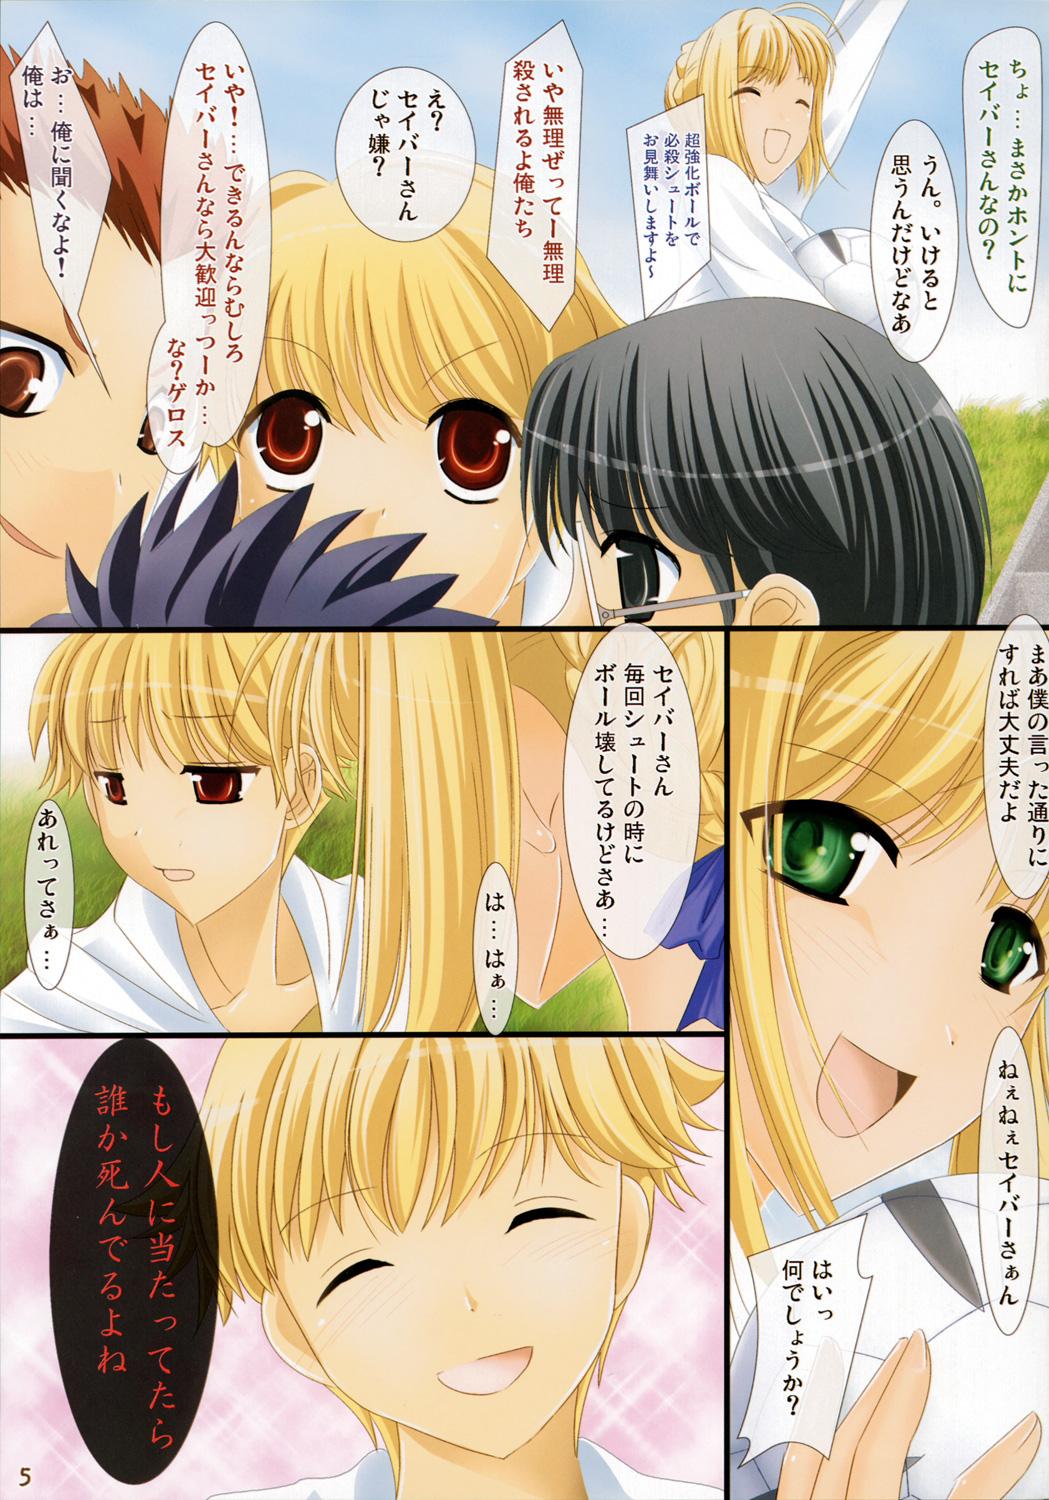 Romance Oshiete! Saber-oneesan - Fate stay night Kissing - Page 4